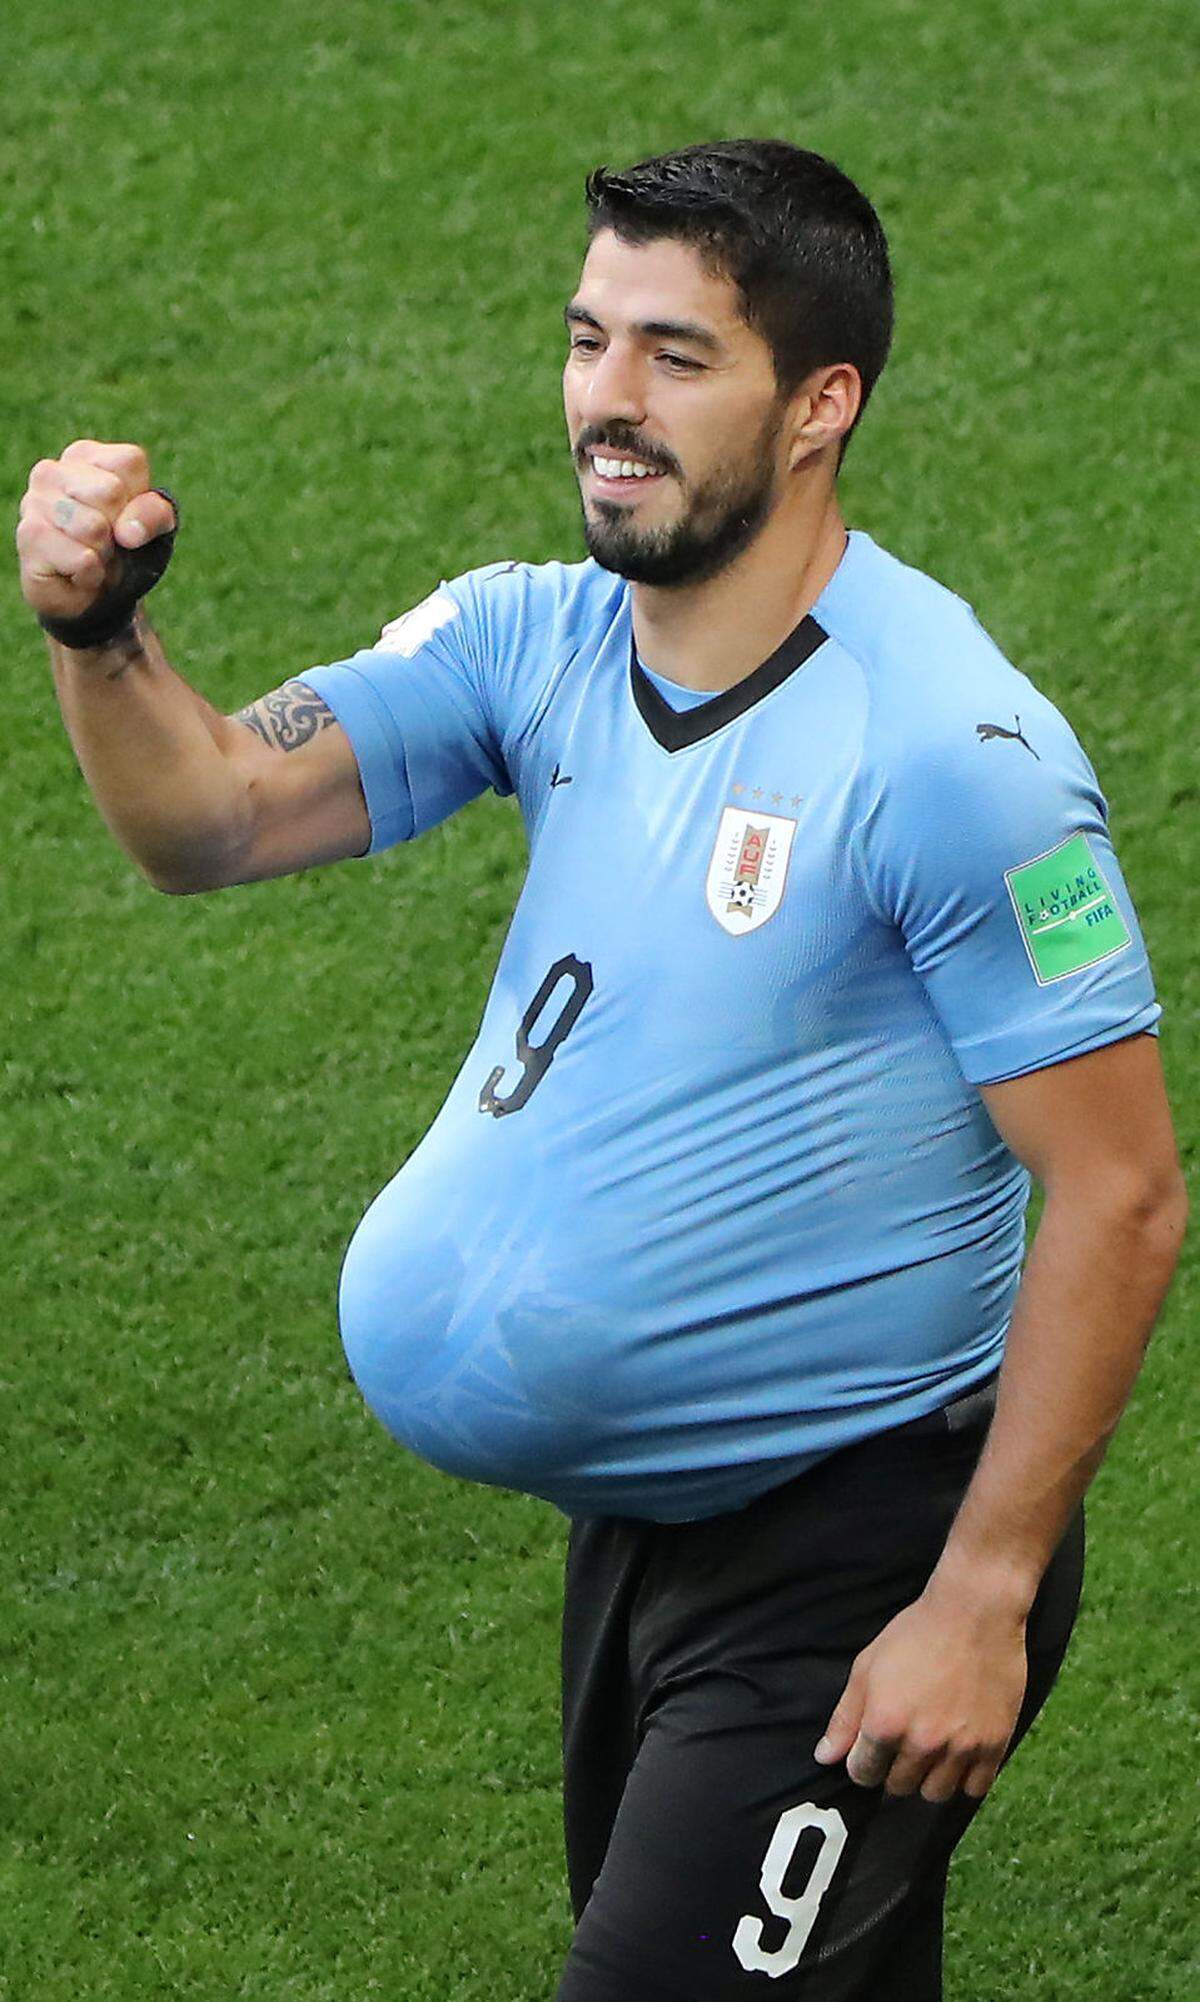 Der Star von Uruguay Luis Suarez hatte in seinen Torjubel eine Botschaft verpackt. Er steckte sich den Ball unter das Leibchen und erklärte später auf Facebook, dass er und seine Frau ihr drittes Kind erwarten. Der Barcelona-Stürmer schoss seine Mannschaft zum 1:0 Sieg gegen Saudi-Arabien.